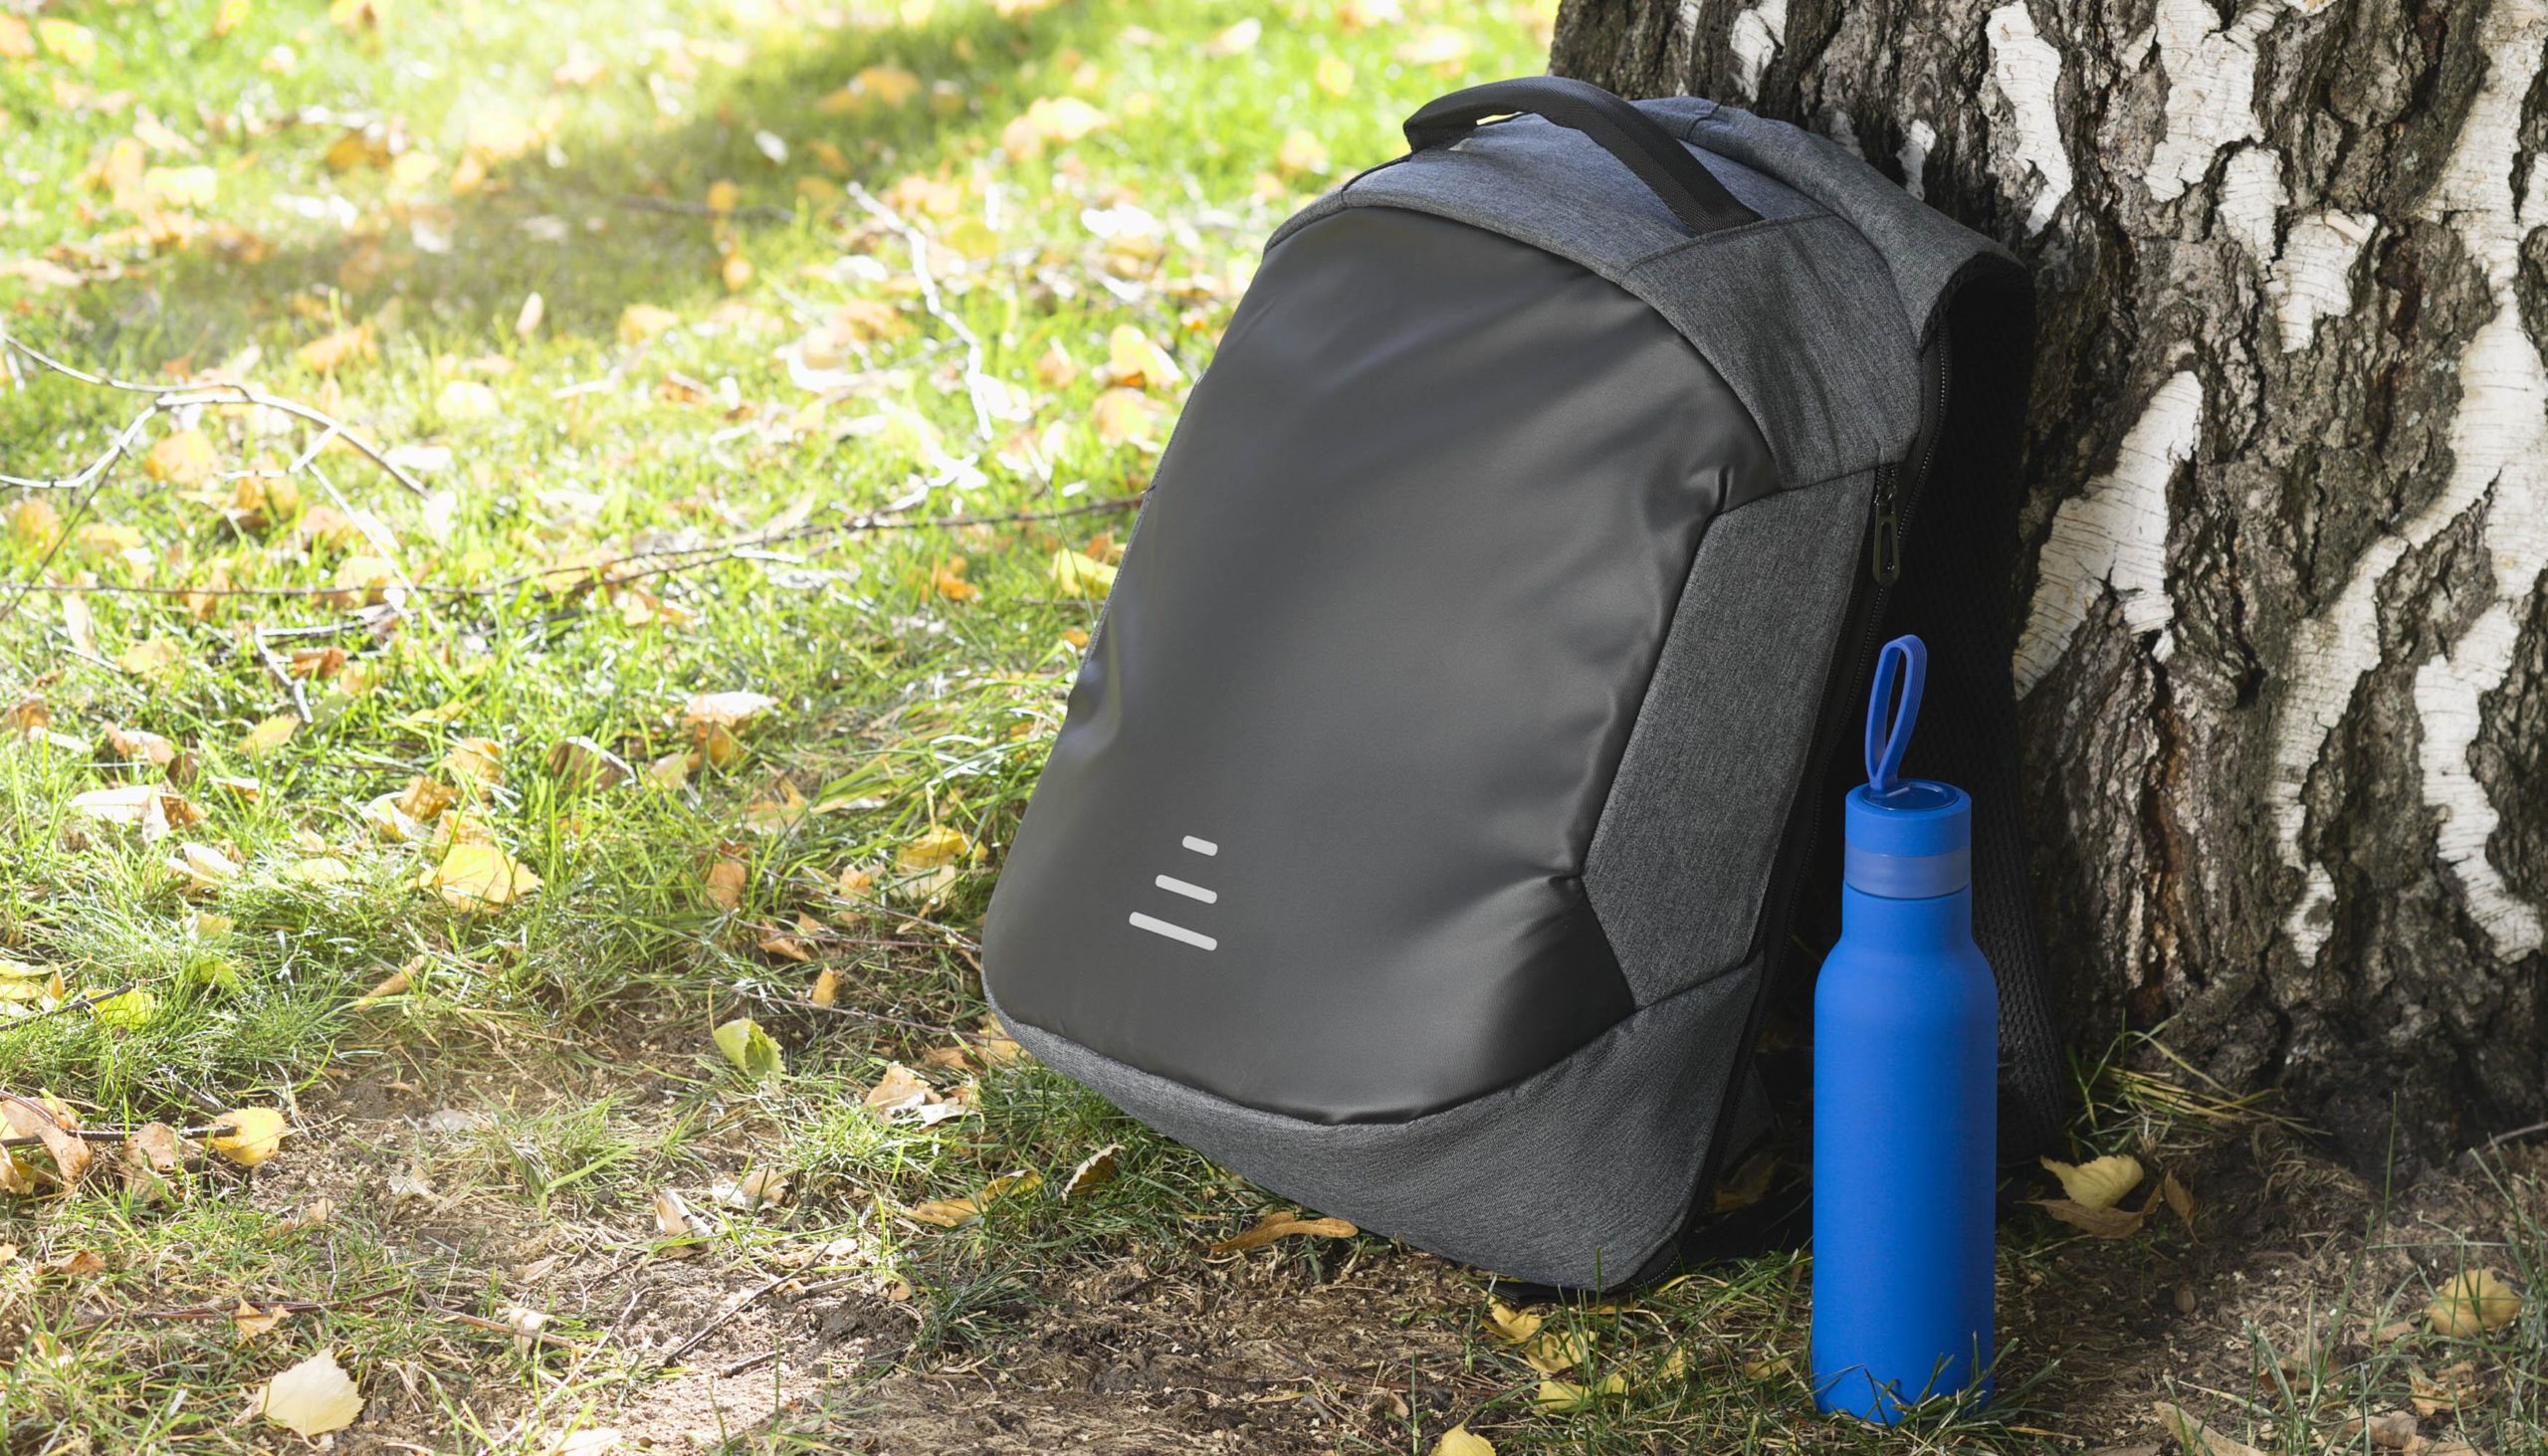 Рюкзак "Holiday" с USB разъемом и защитой от кражи, цвет серый с черным, фото 1